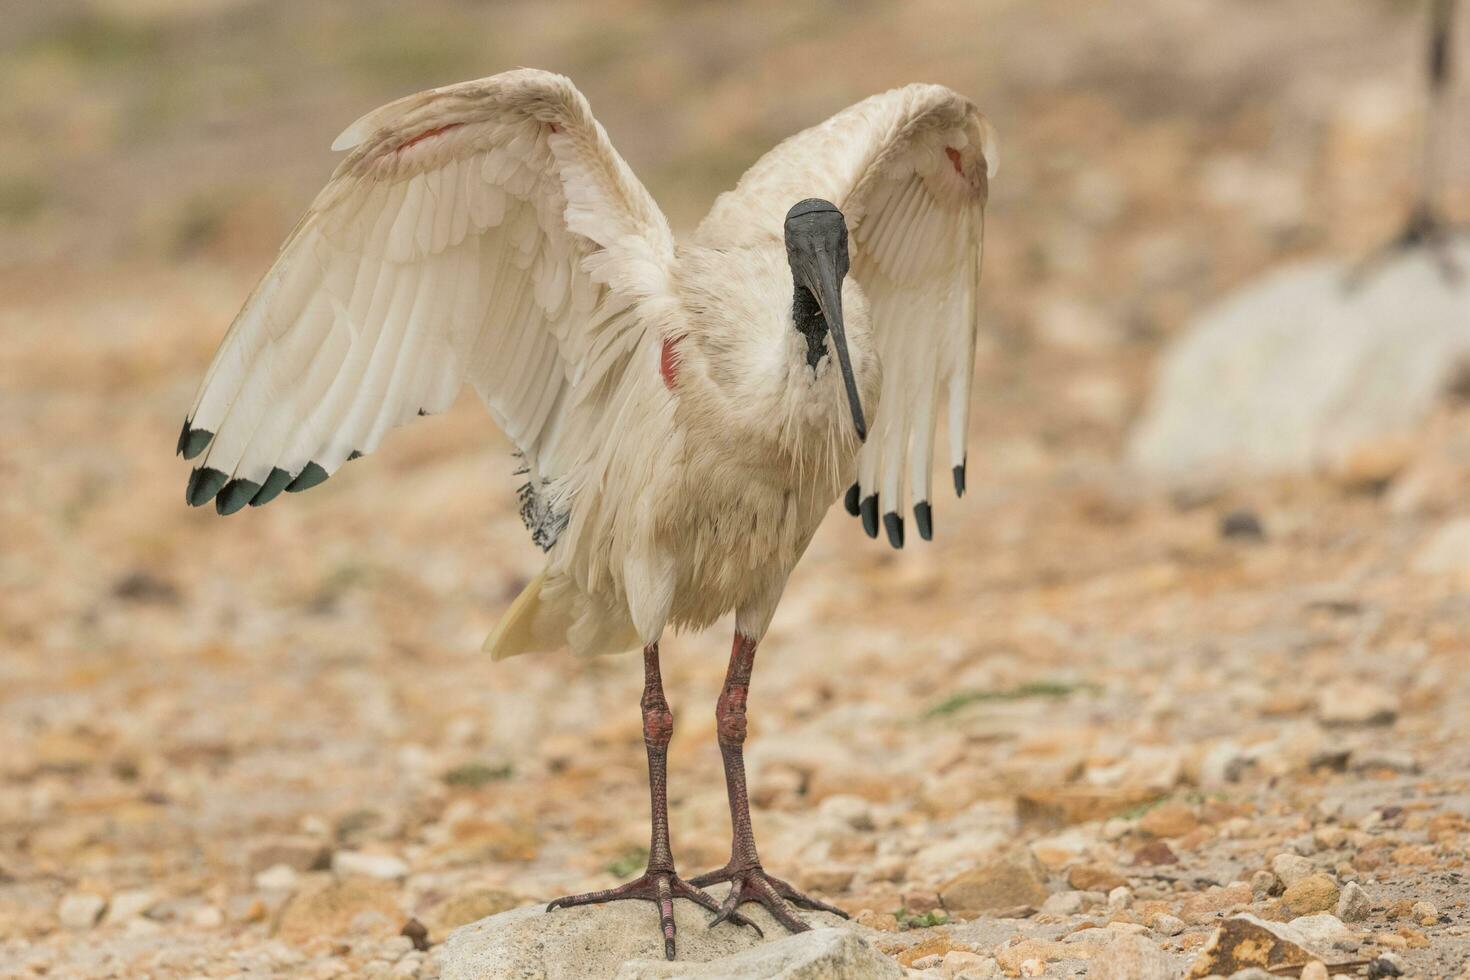 australischer weißer ibis foto